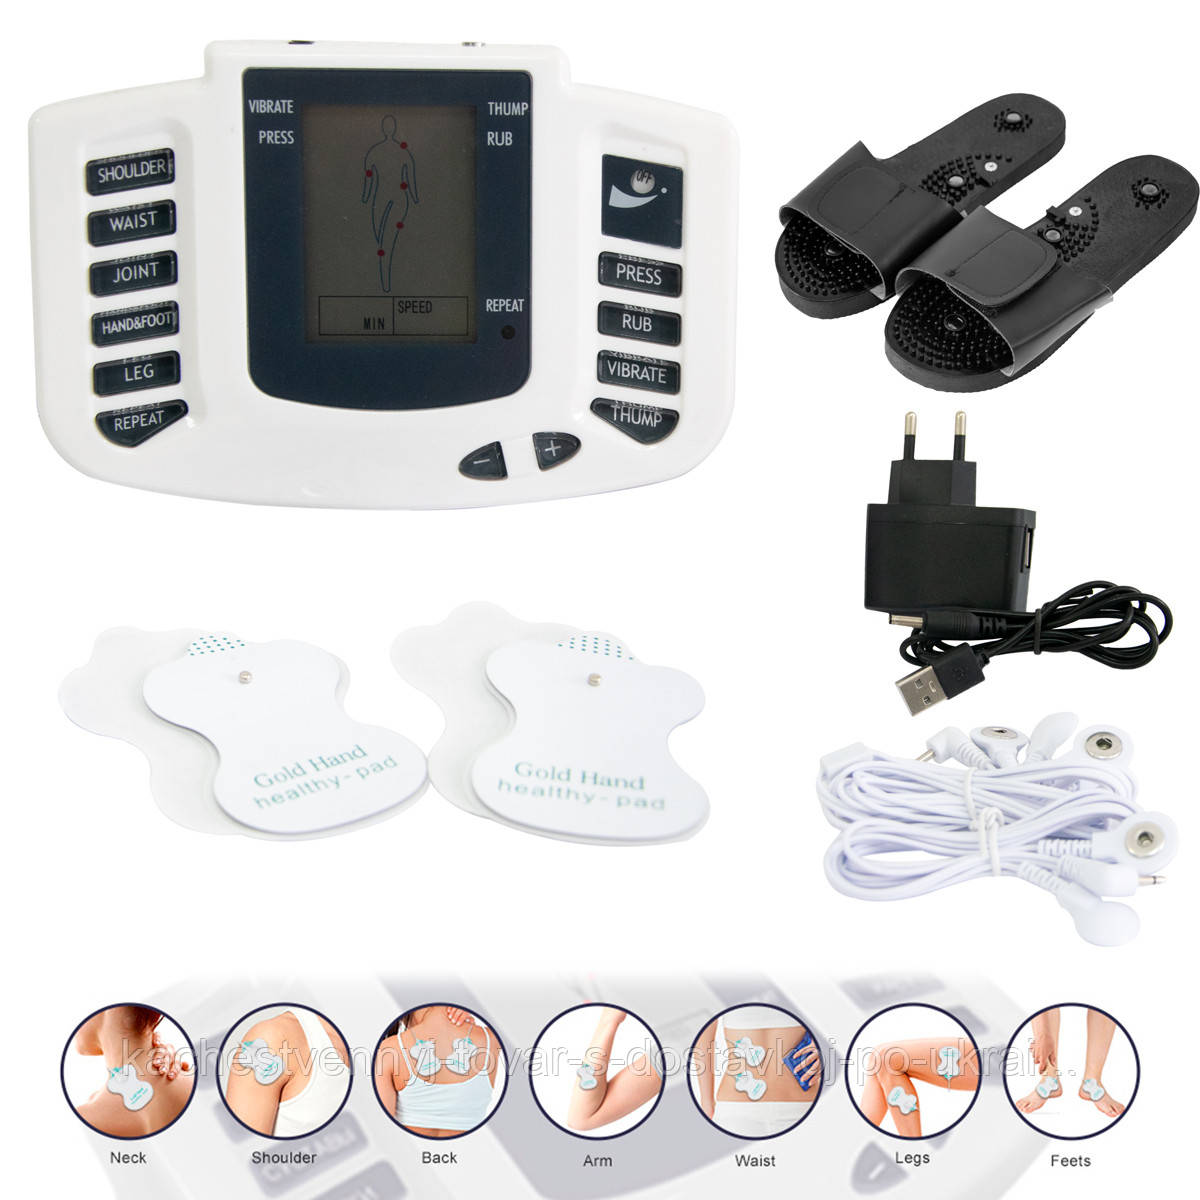 Електронний масажер JR-309, електро міостимулятор для всього тіла, з доставкою по Києву та Україні